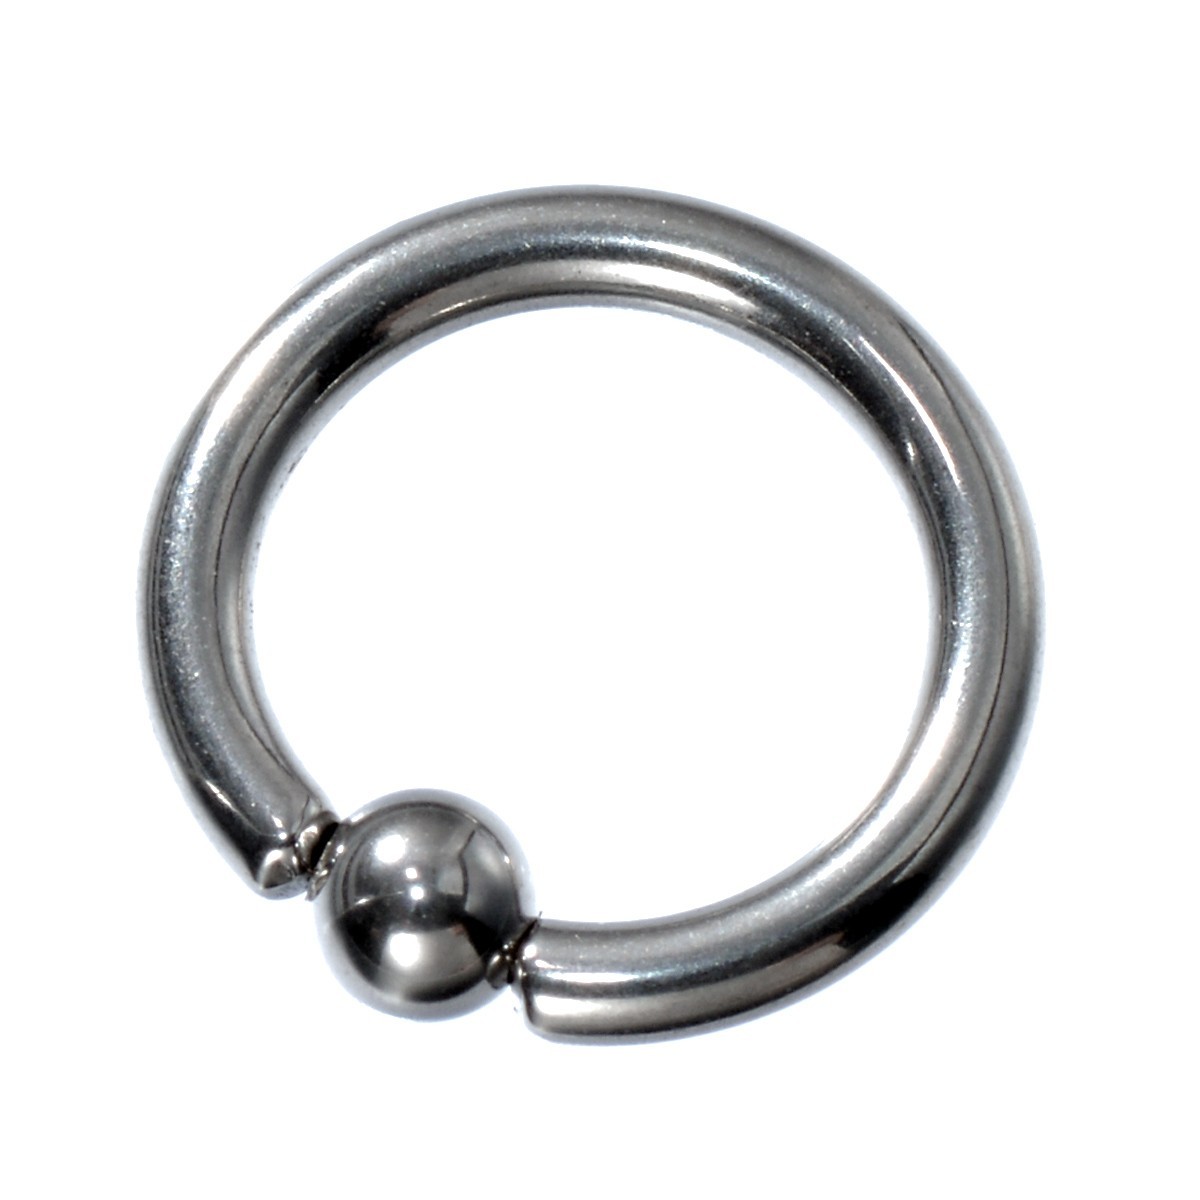 [ продажа по отдельности /1 шт ] пирсинги titanium колпак tib бисер кольцо standard body серьги 14 мера внутренний диаметр 8.0mm мяч 3.0mm серебряный цвет 